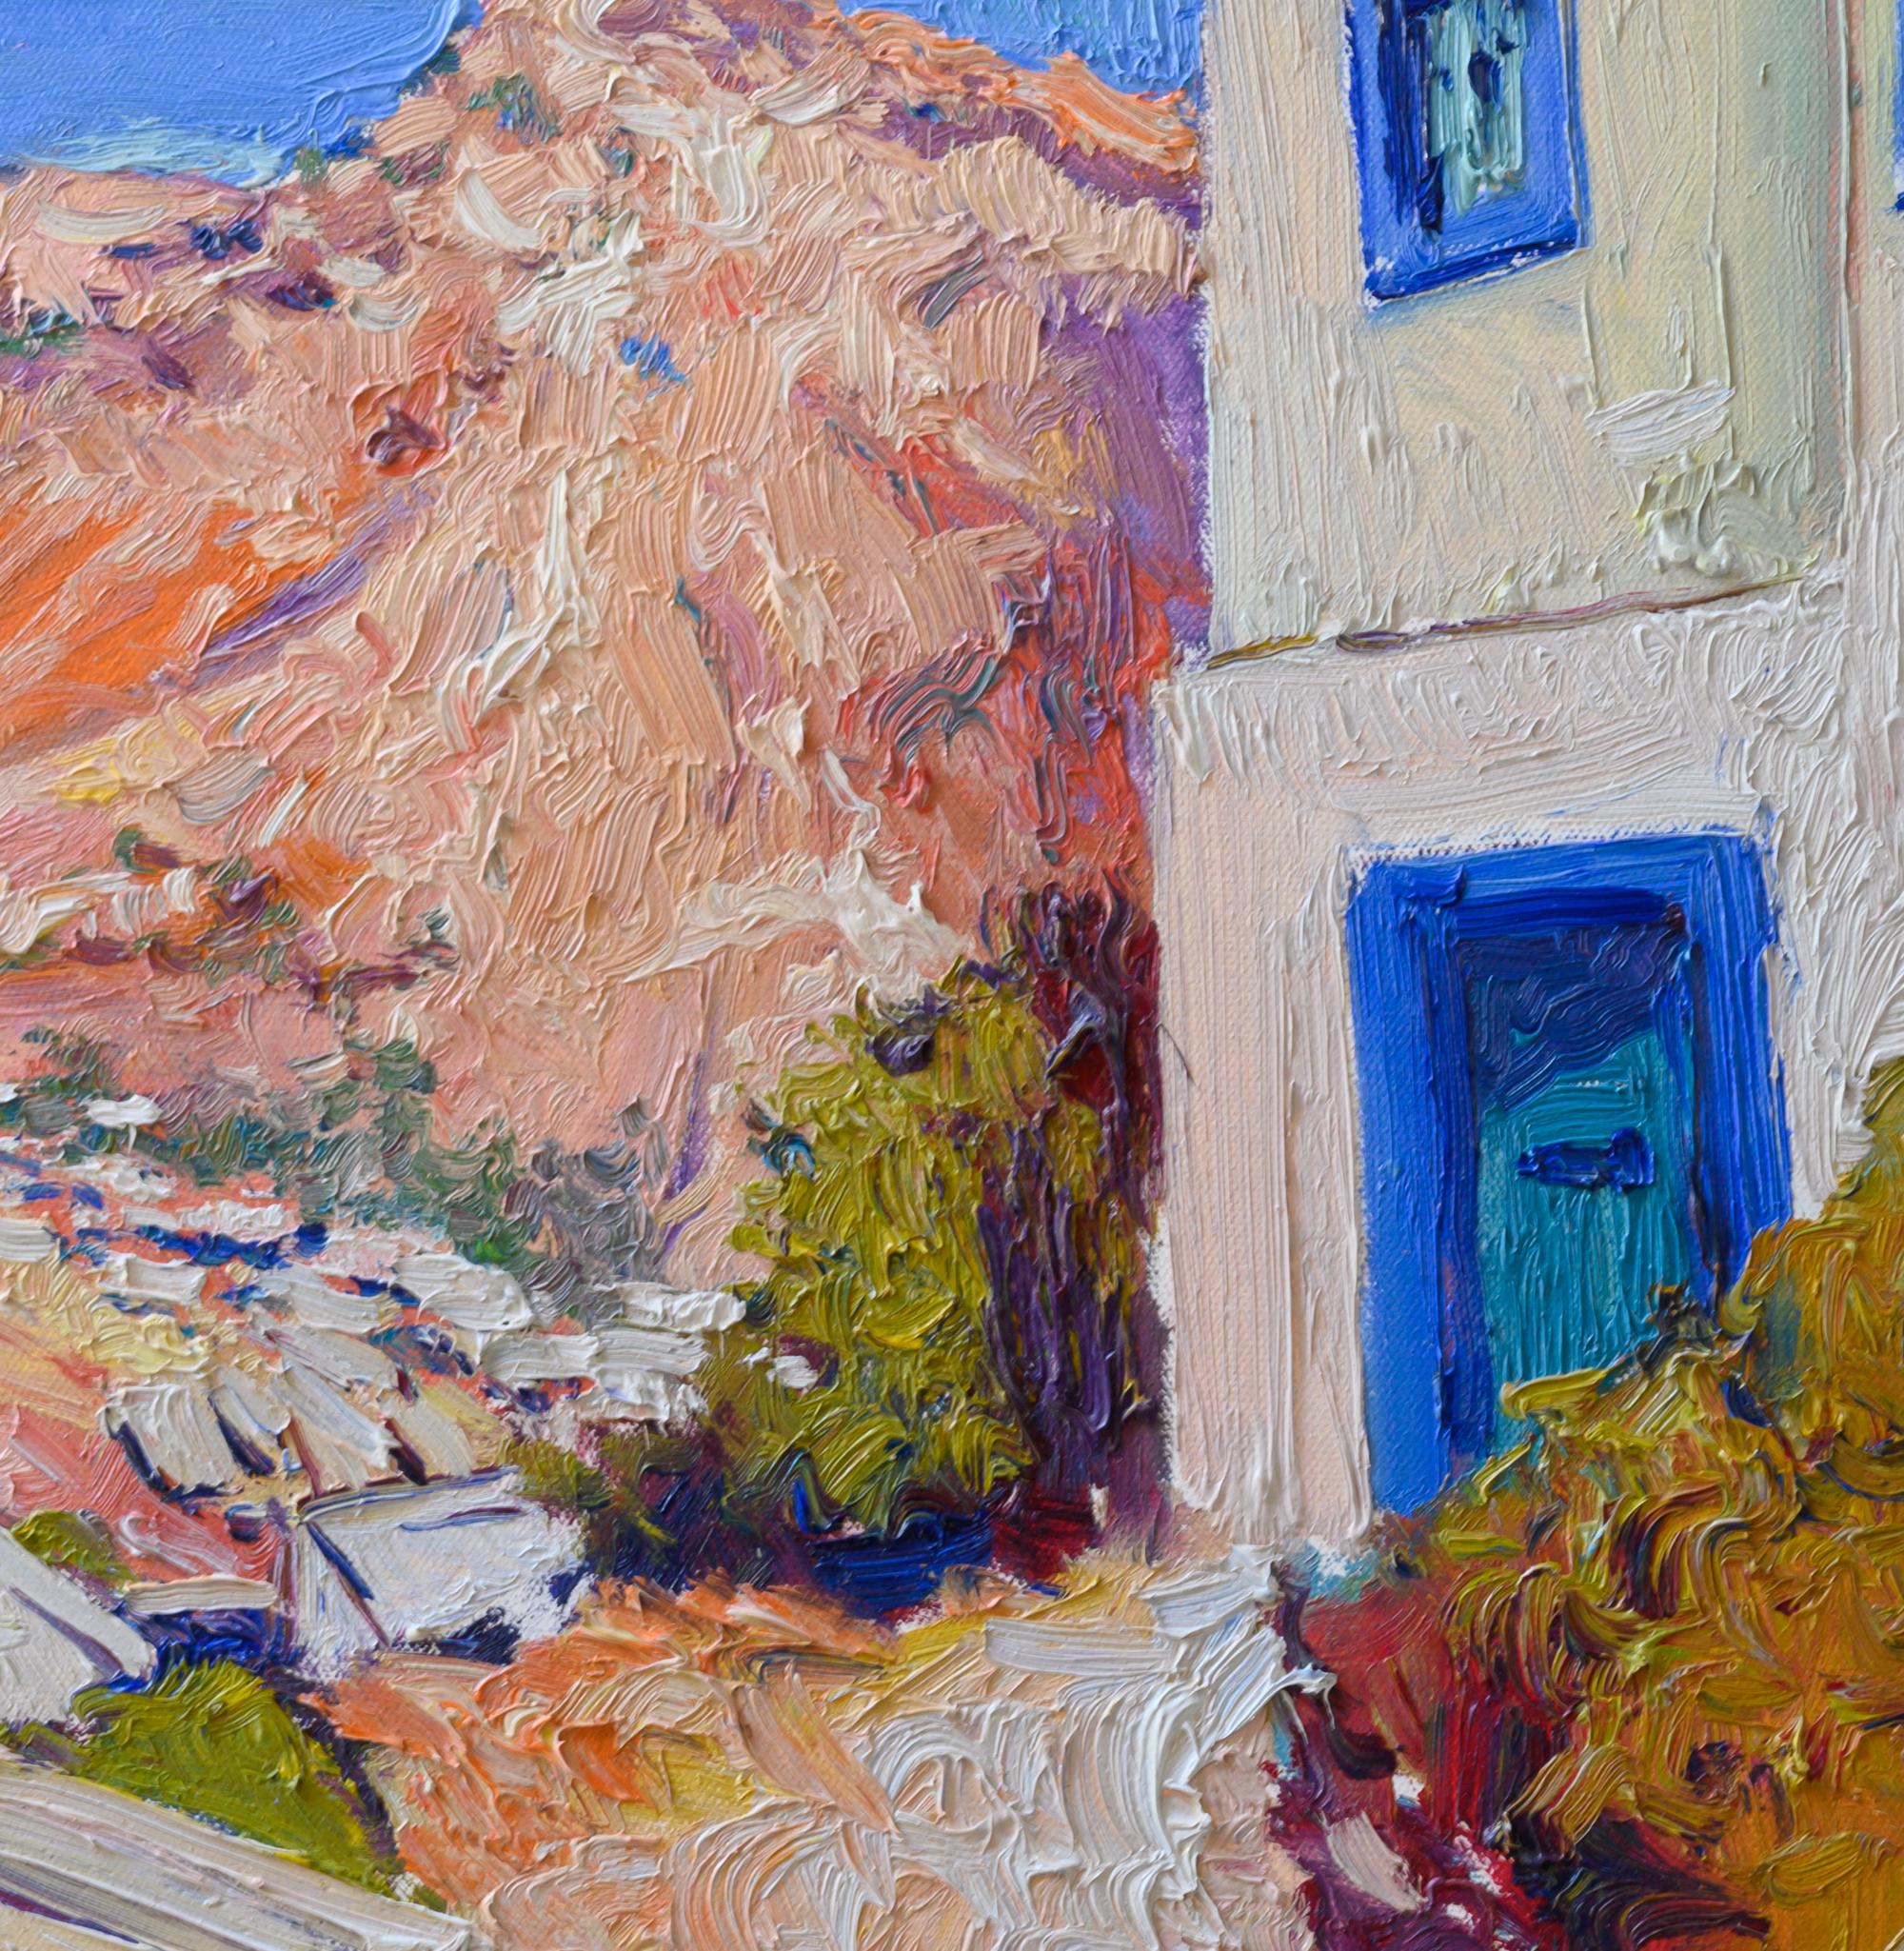 <p>Kommentare des Künstlers<br>Der Künstler Suren Nersisyan zeigt eine wunderschöne mediterrane Aussicht auf eine griechische Insel. Die malerische Szenerie bietet einen Blick auf eine charmante griechische Stadt am Fuße der Insel. Weiße Häuser,